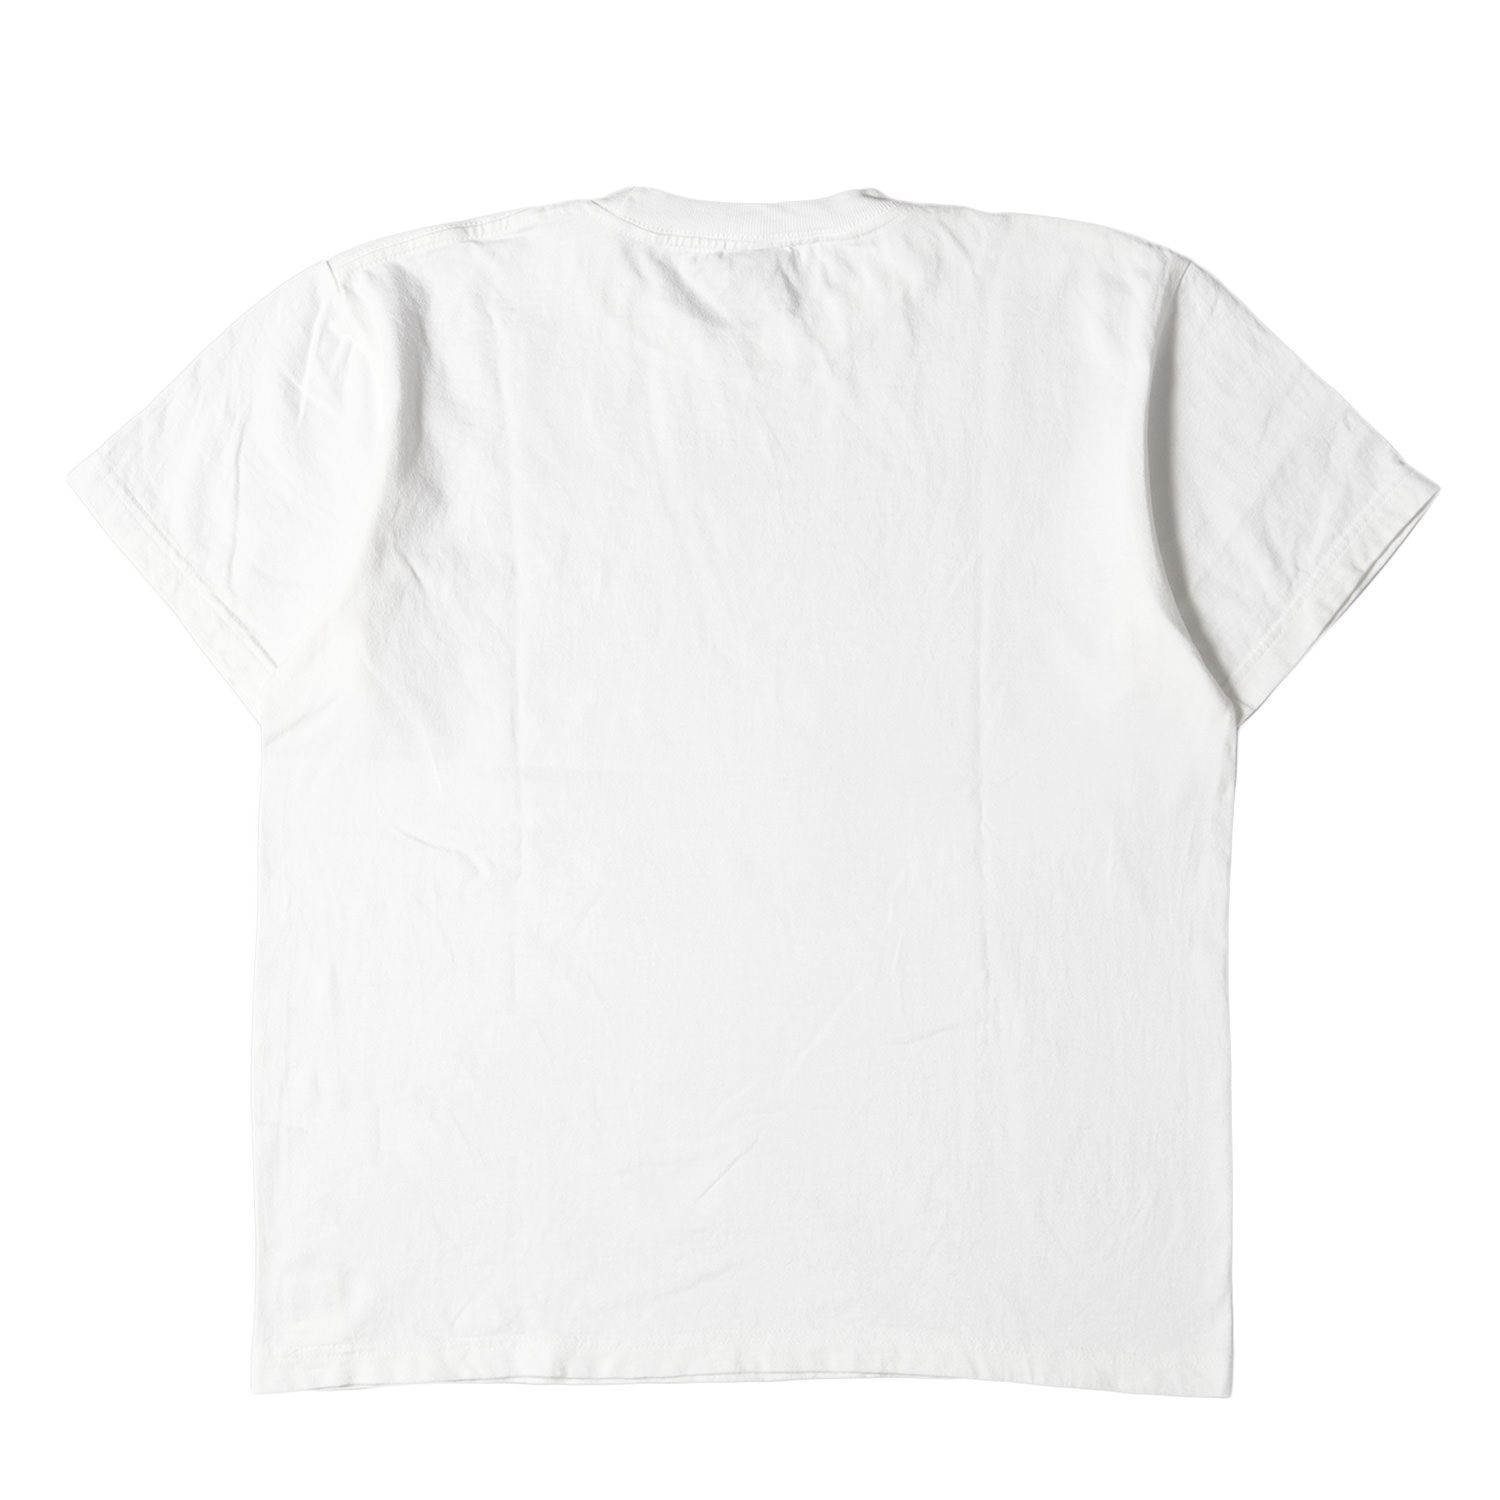 APPLEBUM アップルバム Tシャツ サイズ:M フォト プリント クルーネック 半袖 Tシャツ ホワイト 白 トップス カットソー 【メンズ】